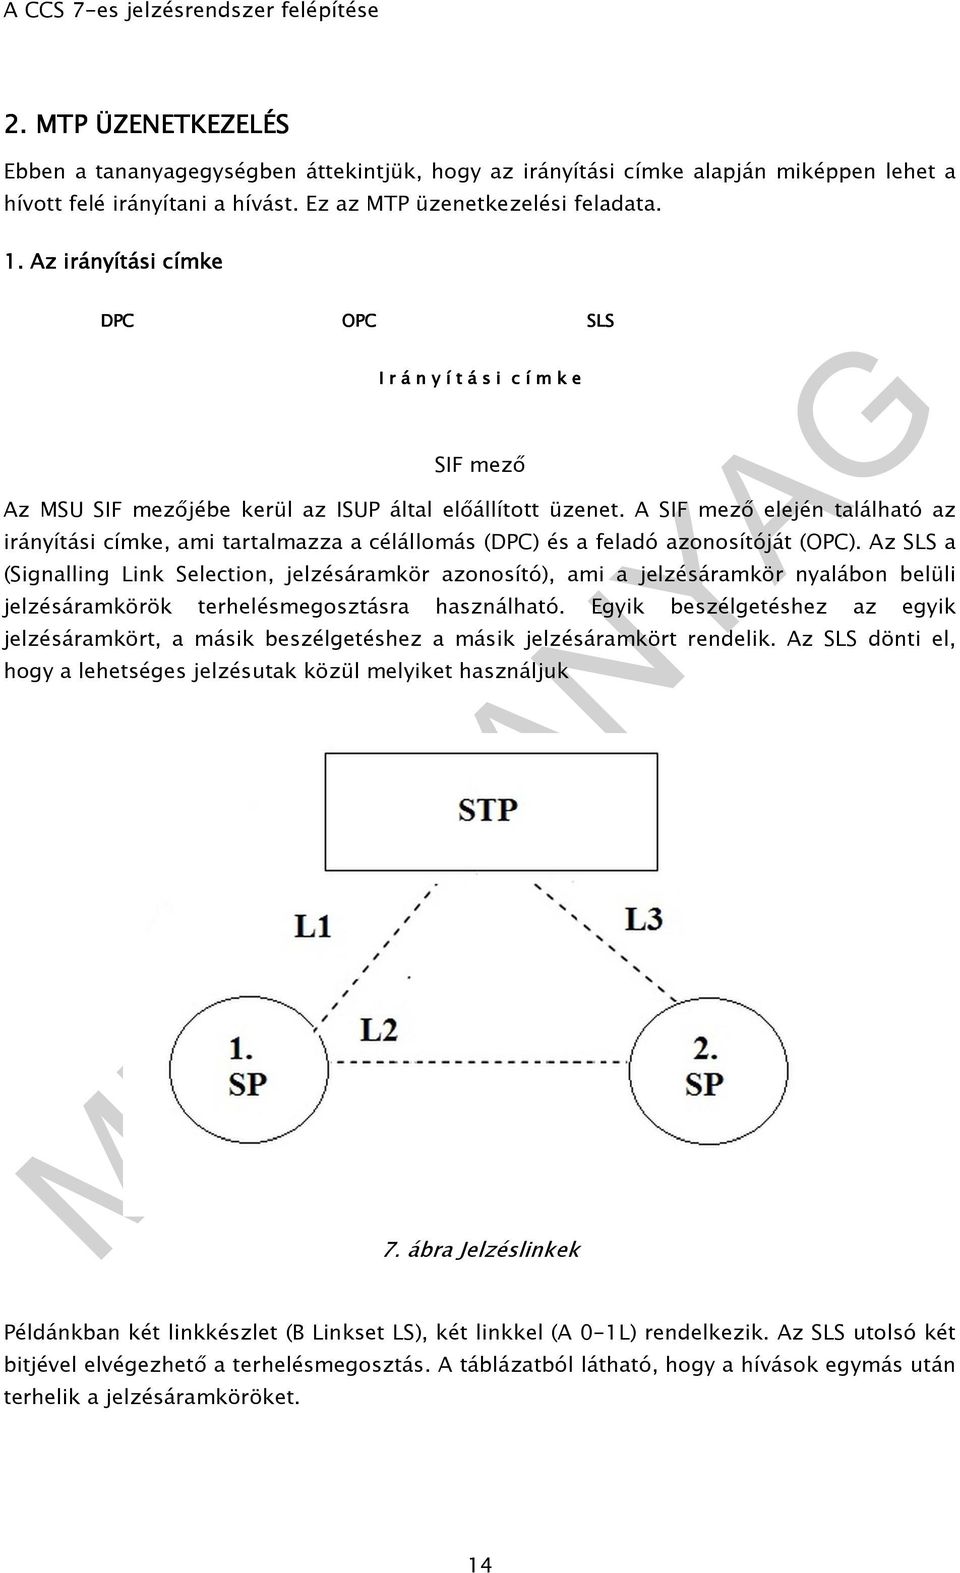 A SIF mezı elején található az irányítási címke, ami tartalmazza a célállomás (DPC) és a feladó azonosítóját (OPC).